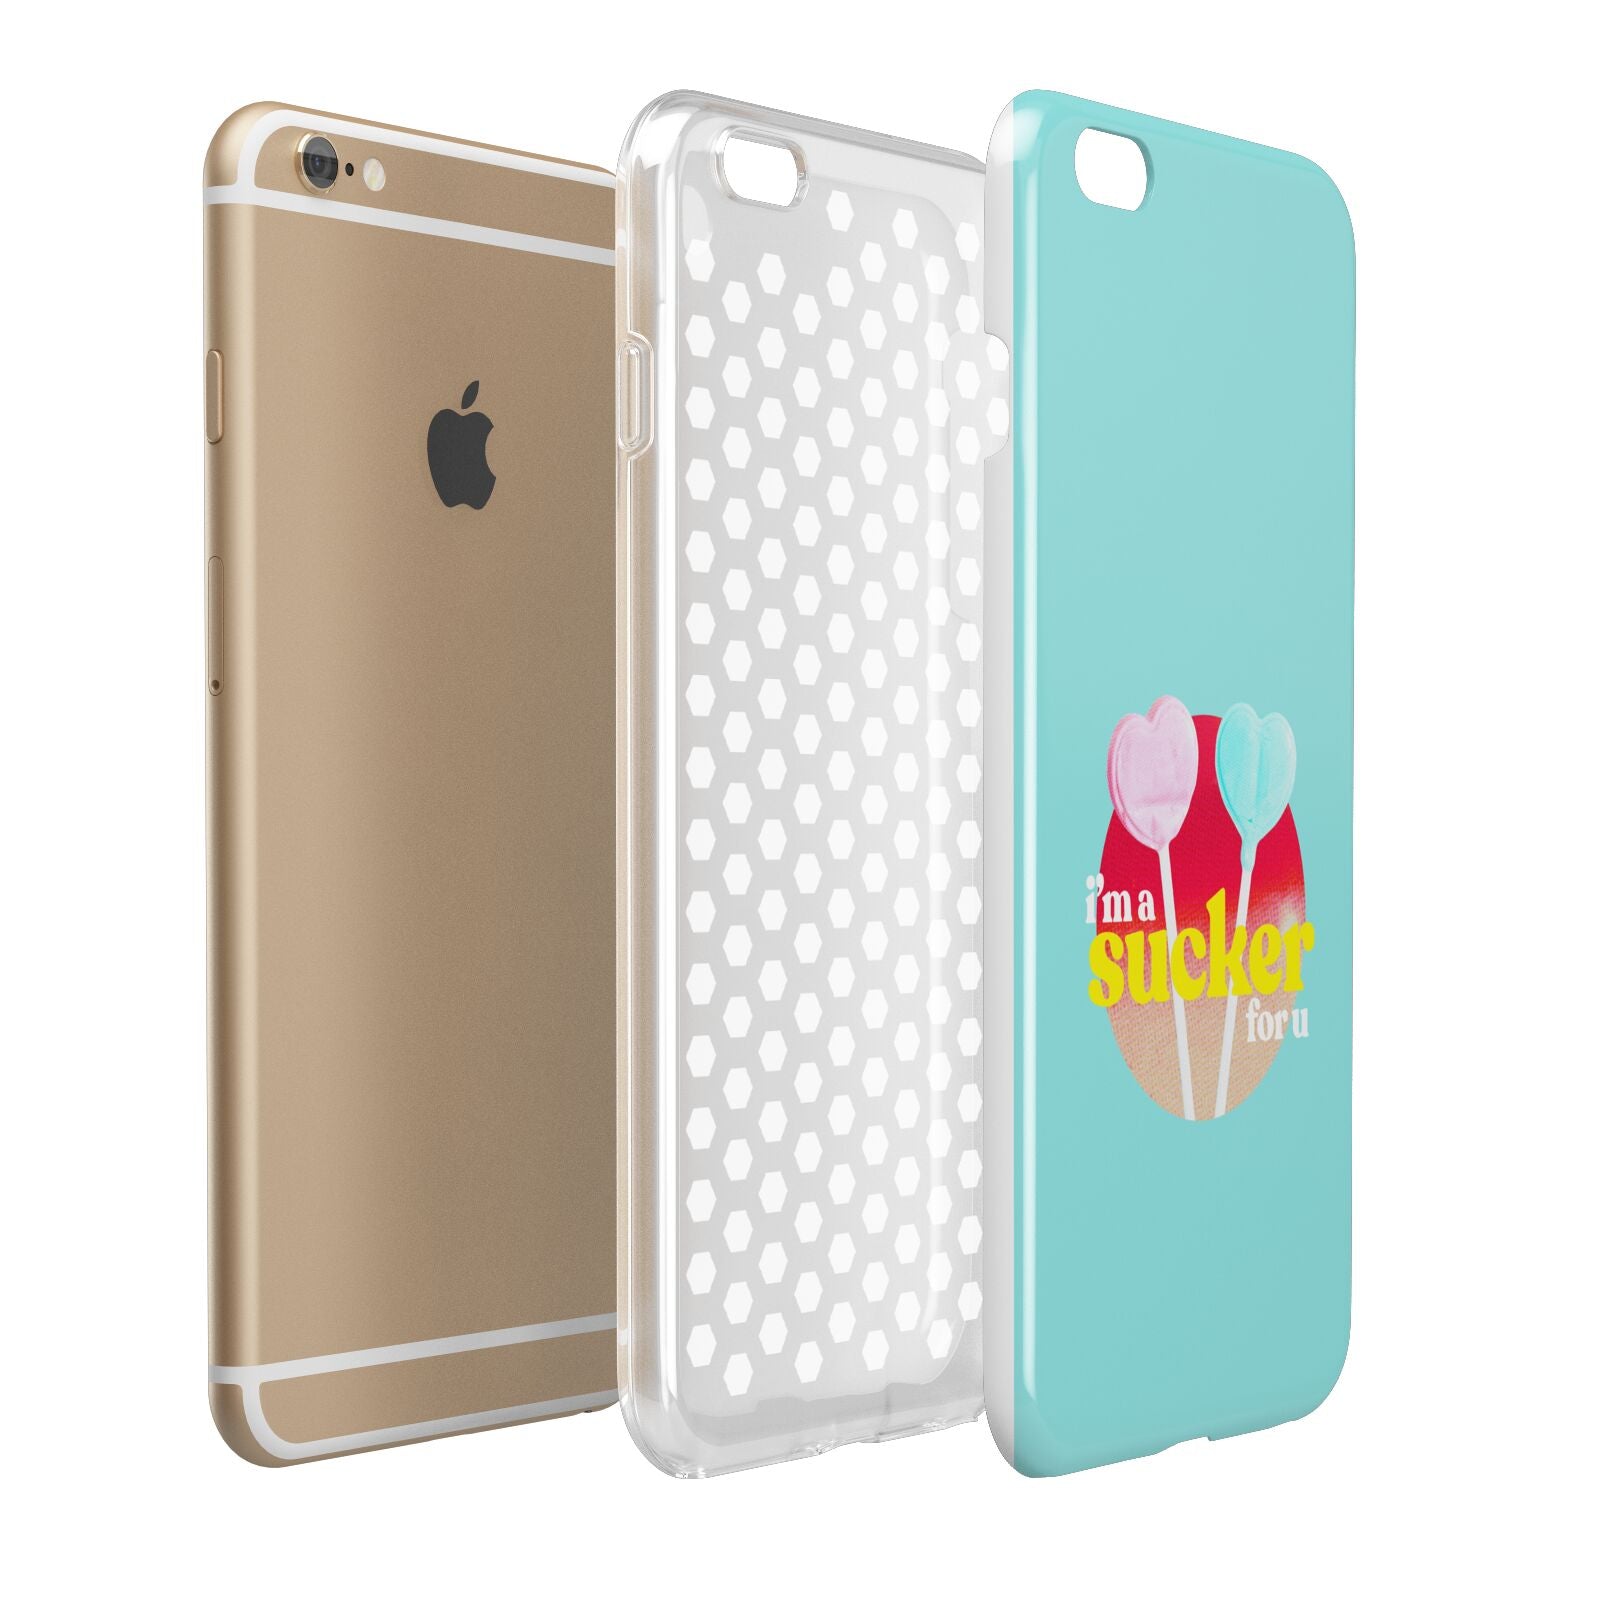 Retro Valentine Apple iPhone 6 Plus 3D Tough Case Expand Detail Image